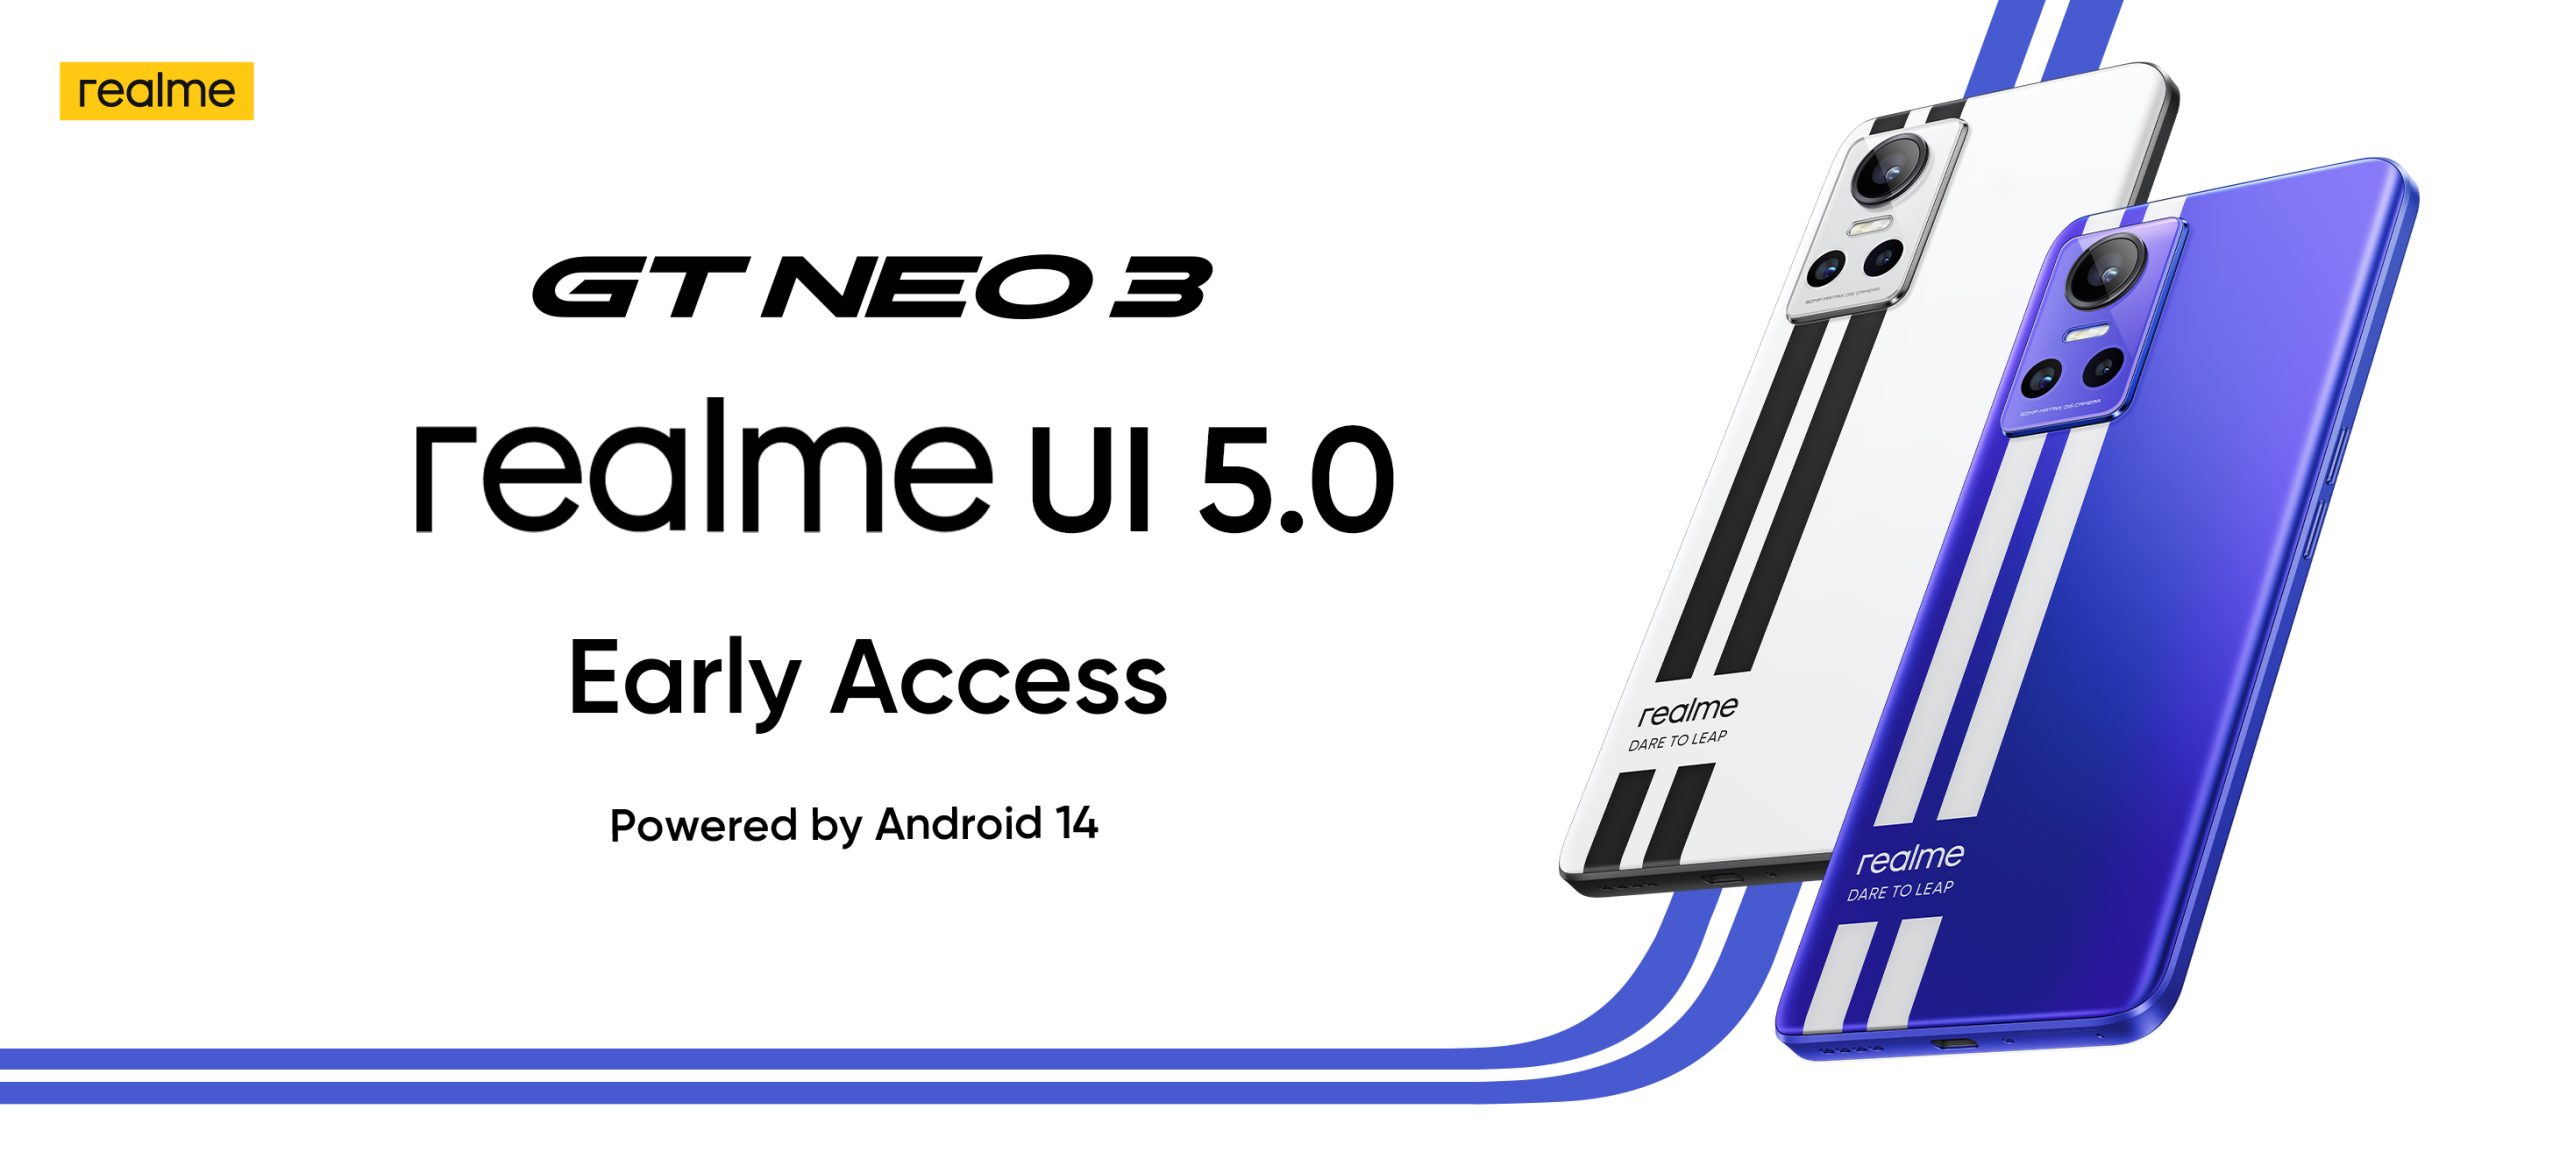 Pengguna Realme GT Neo 3 Kini Boleh Mencuba Realme UI 5.0 Berasaskan Android 14